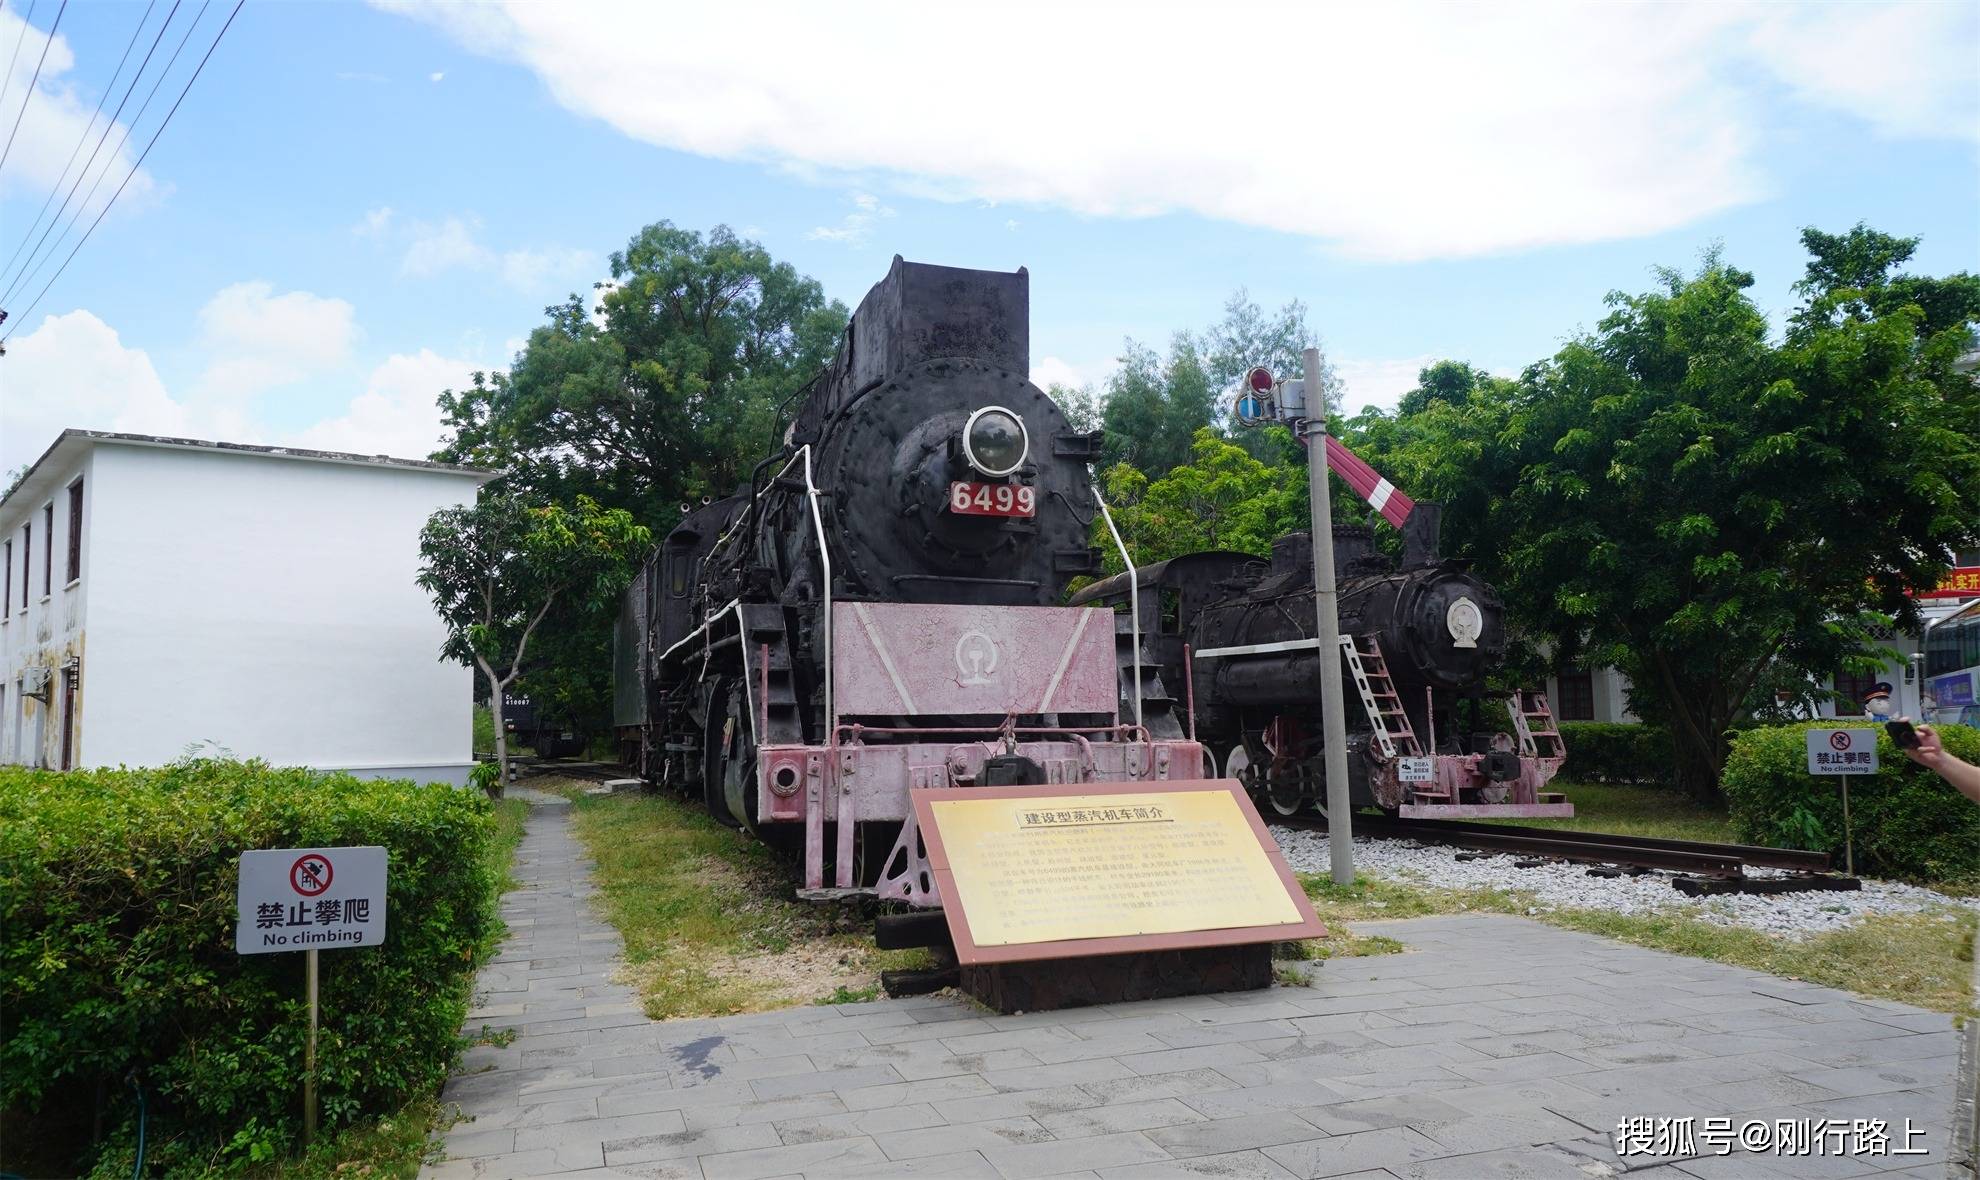 走进海南铁路博物馆,感受海南铁路历史的变迁